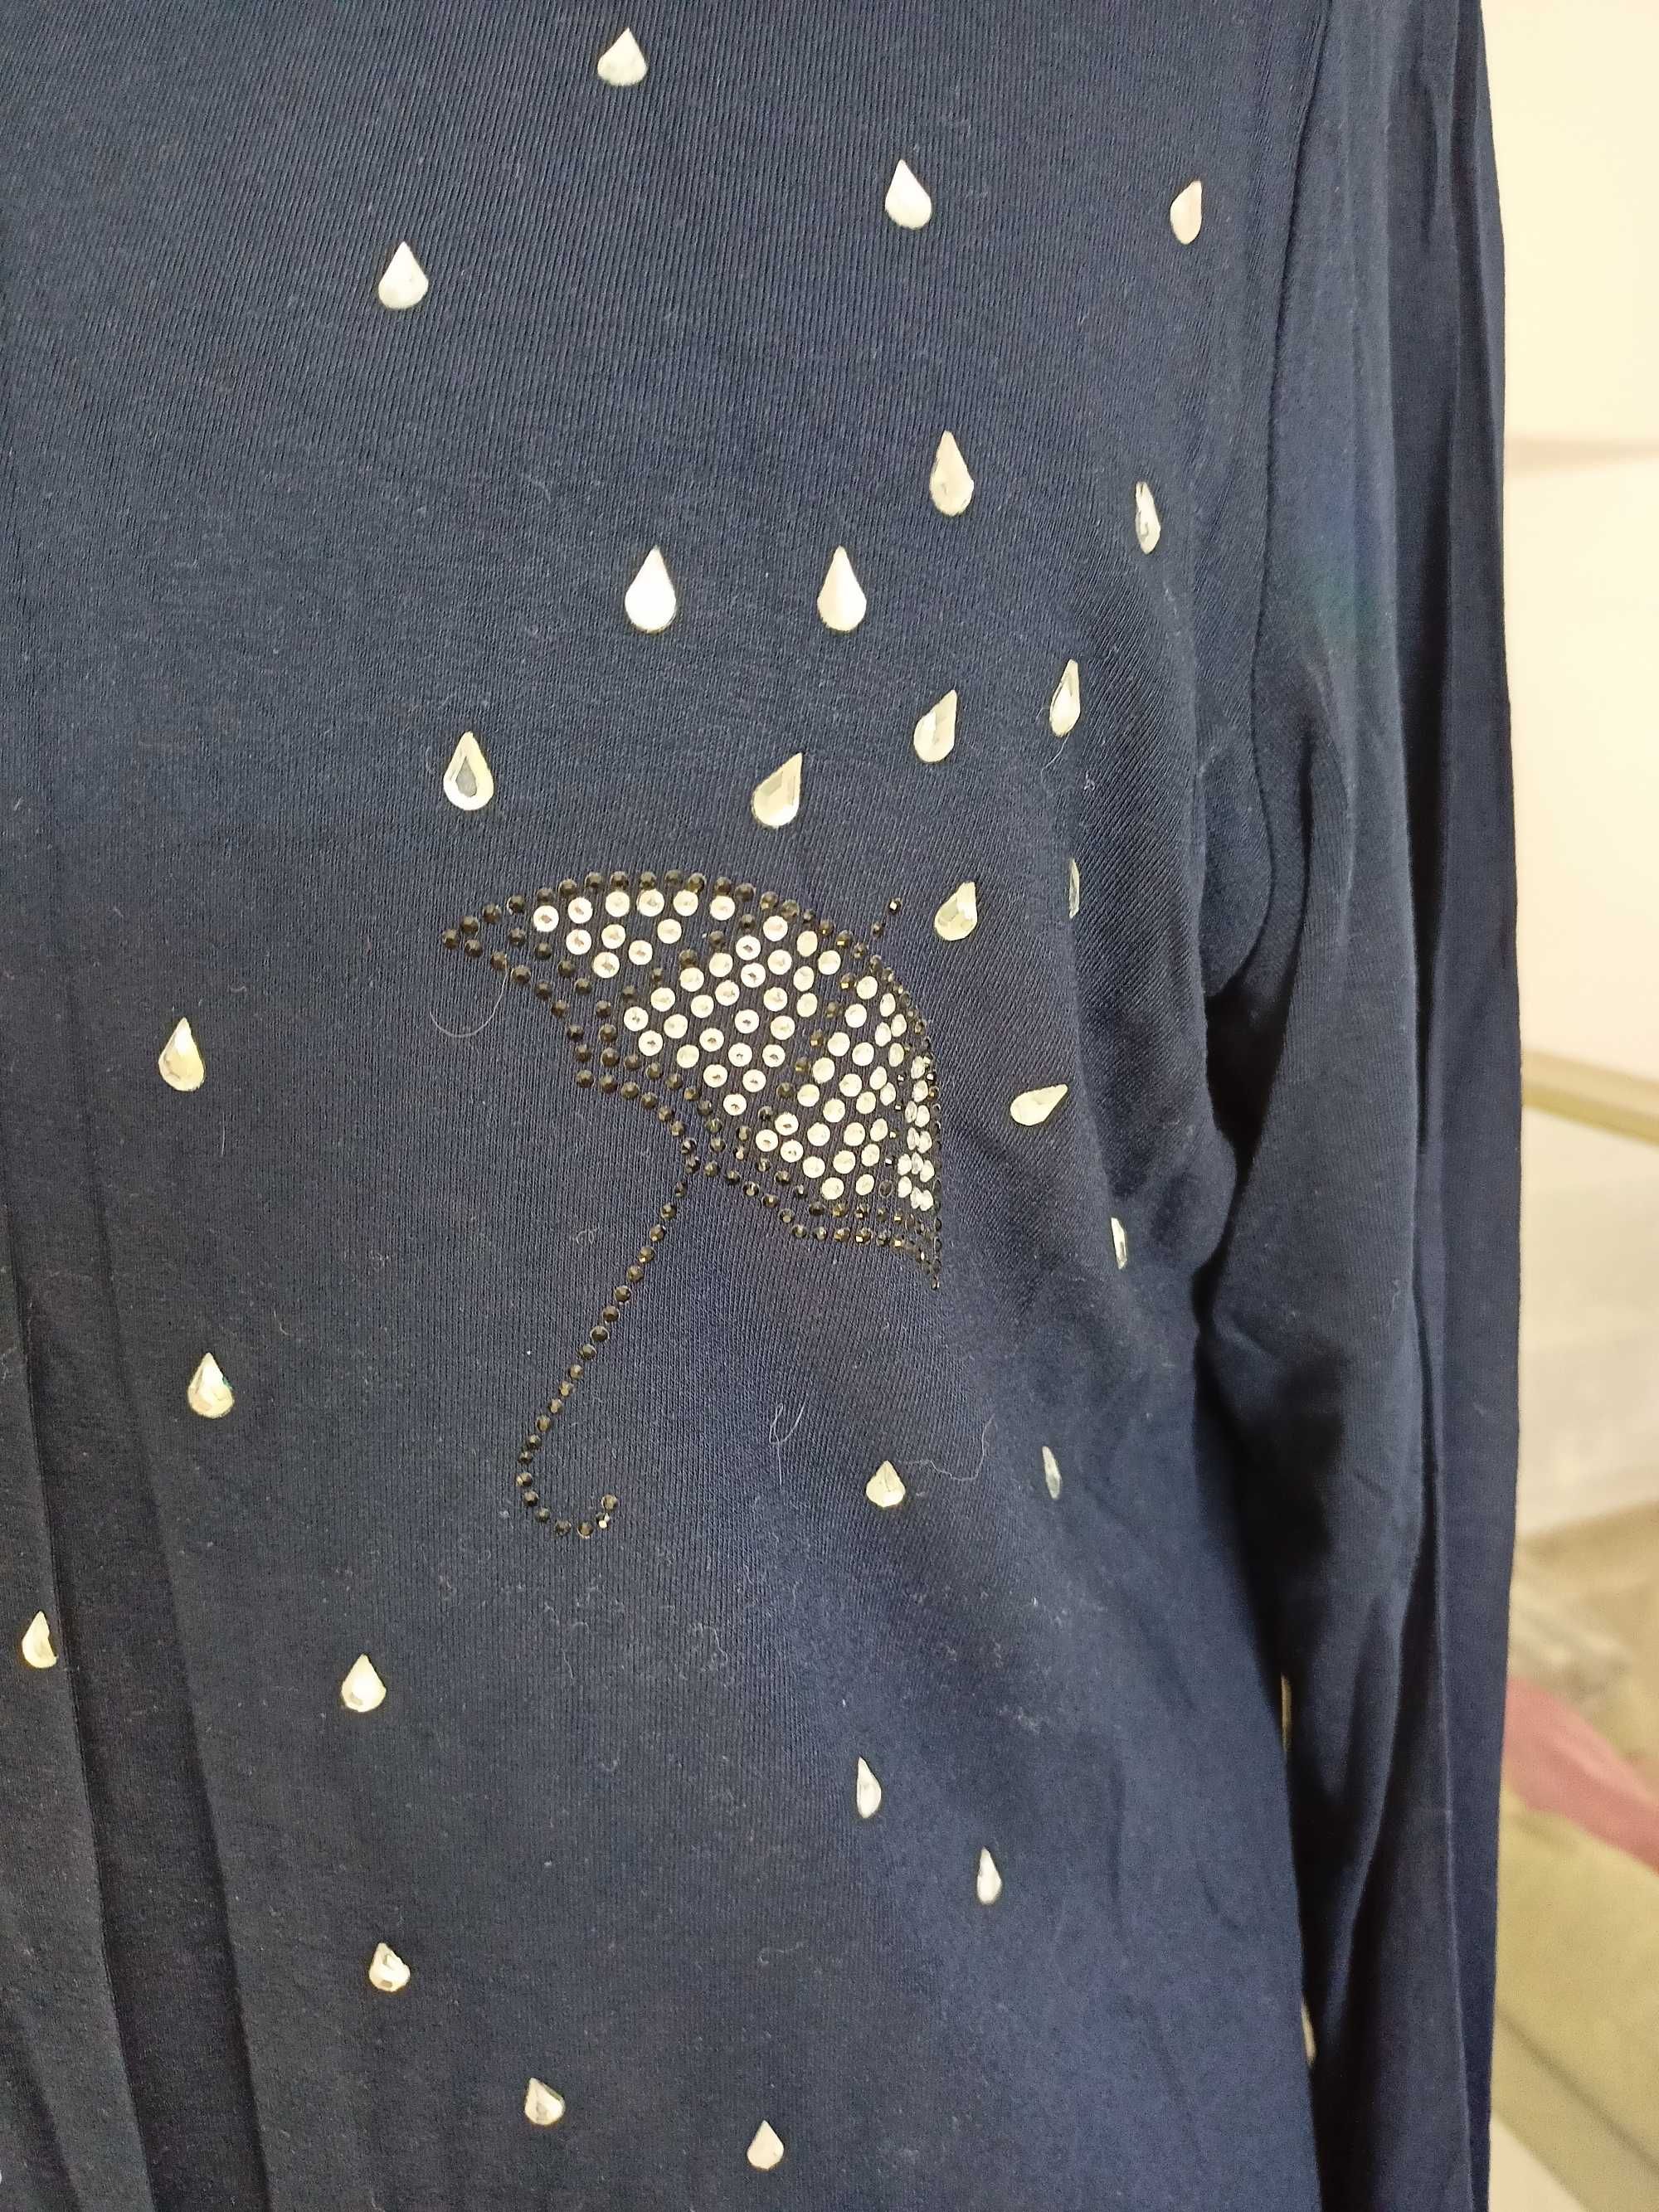 Bluzka 48 zdobiona w parasolki i krople deszczu